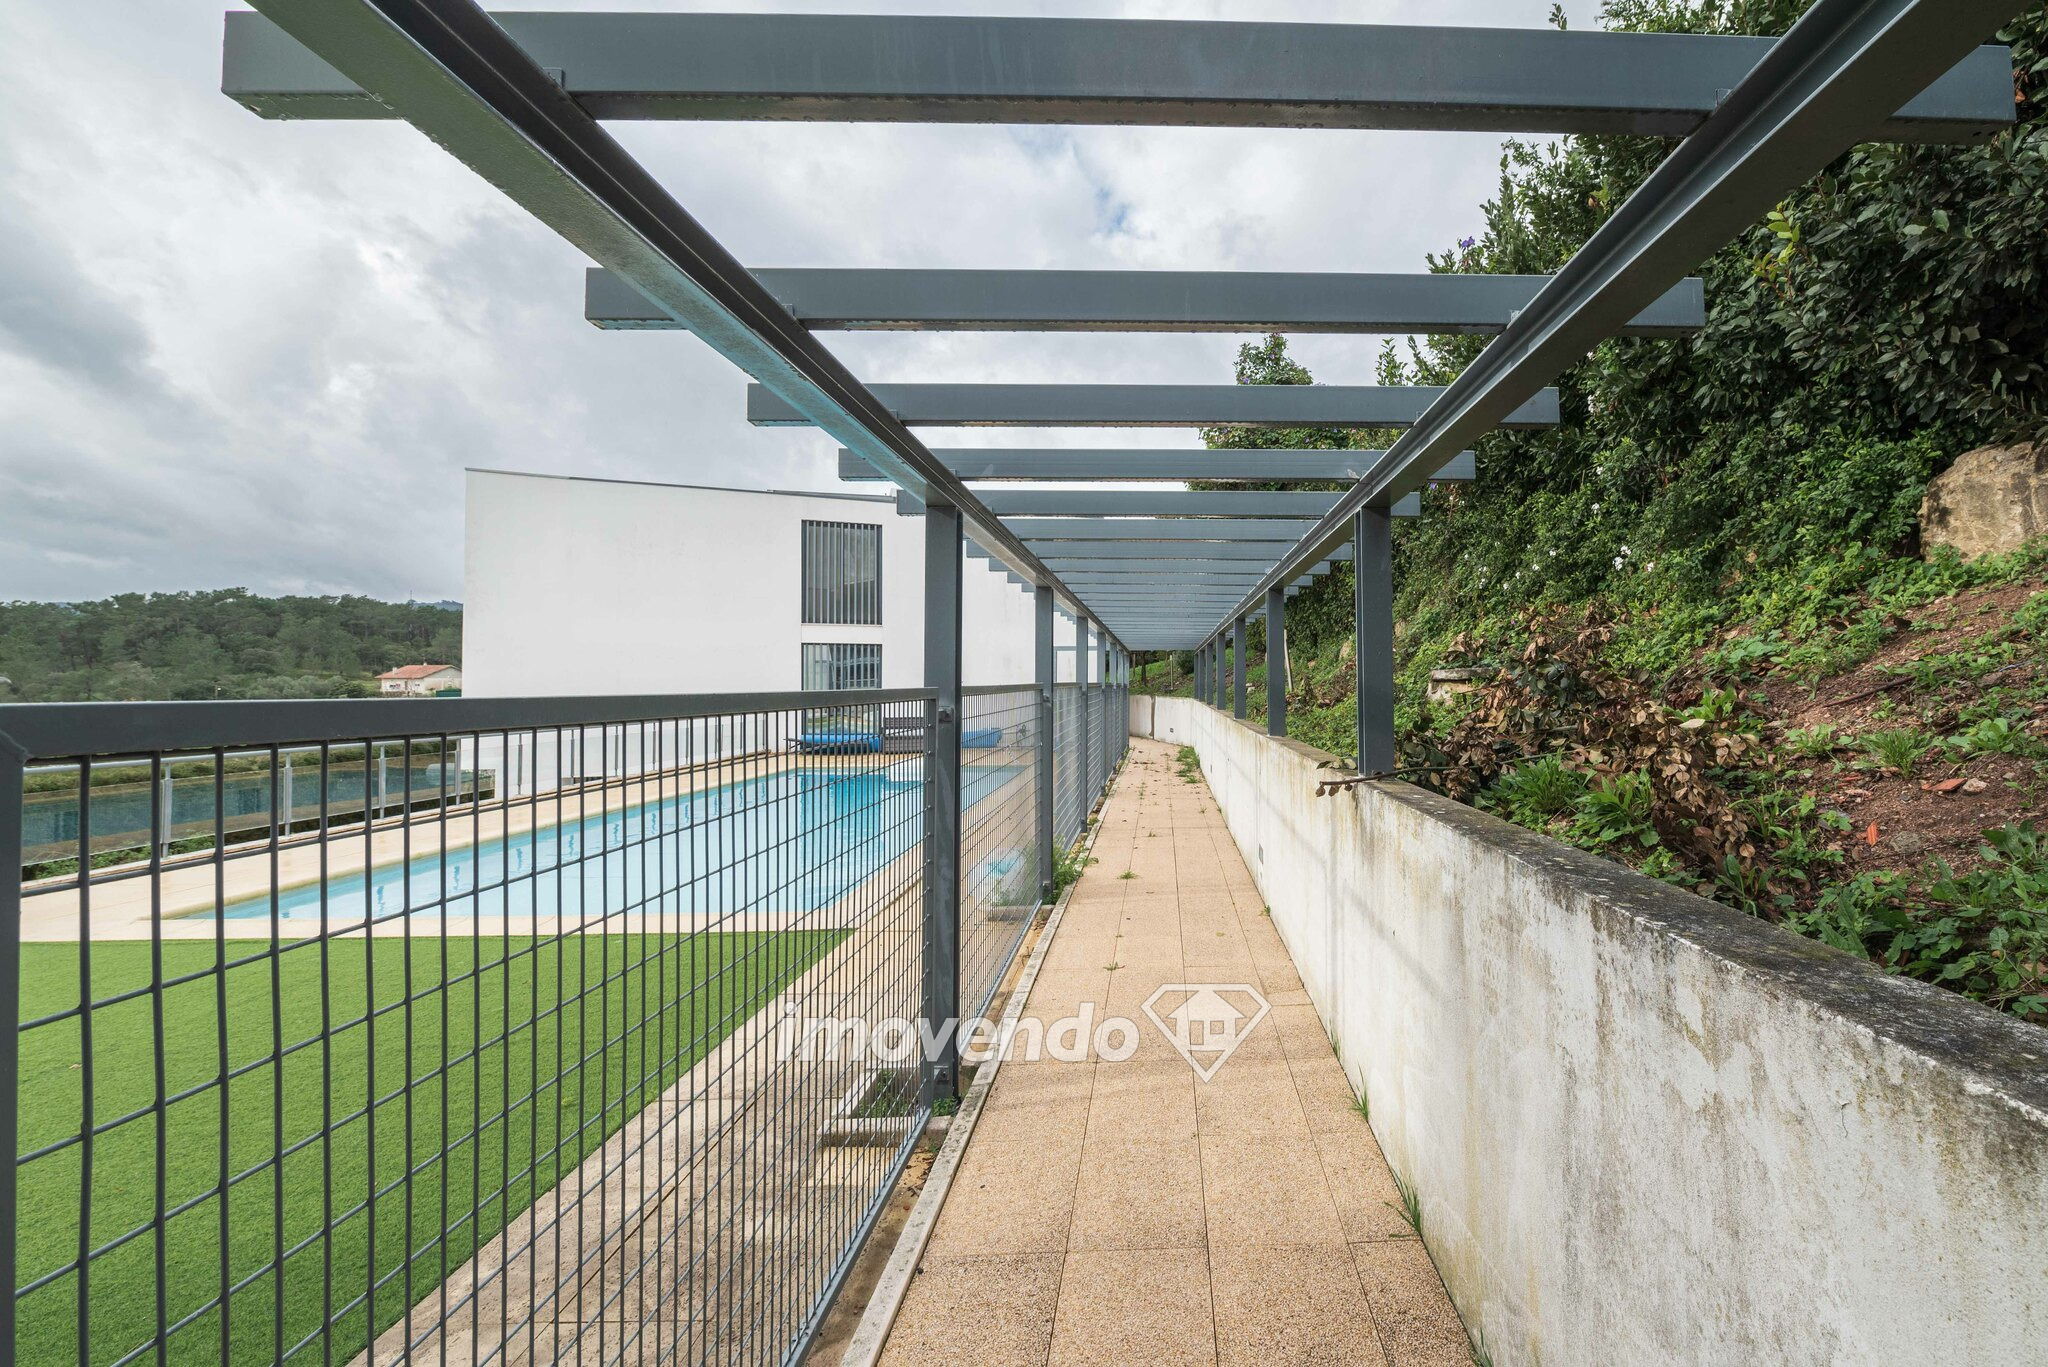 Moradia T3+1 exclusiva com garagem em Condomínio c/ piscina, em Loures